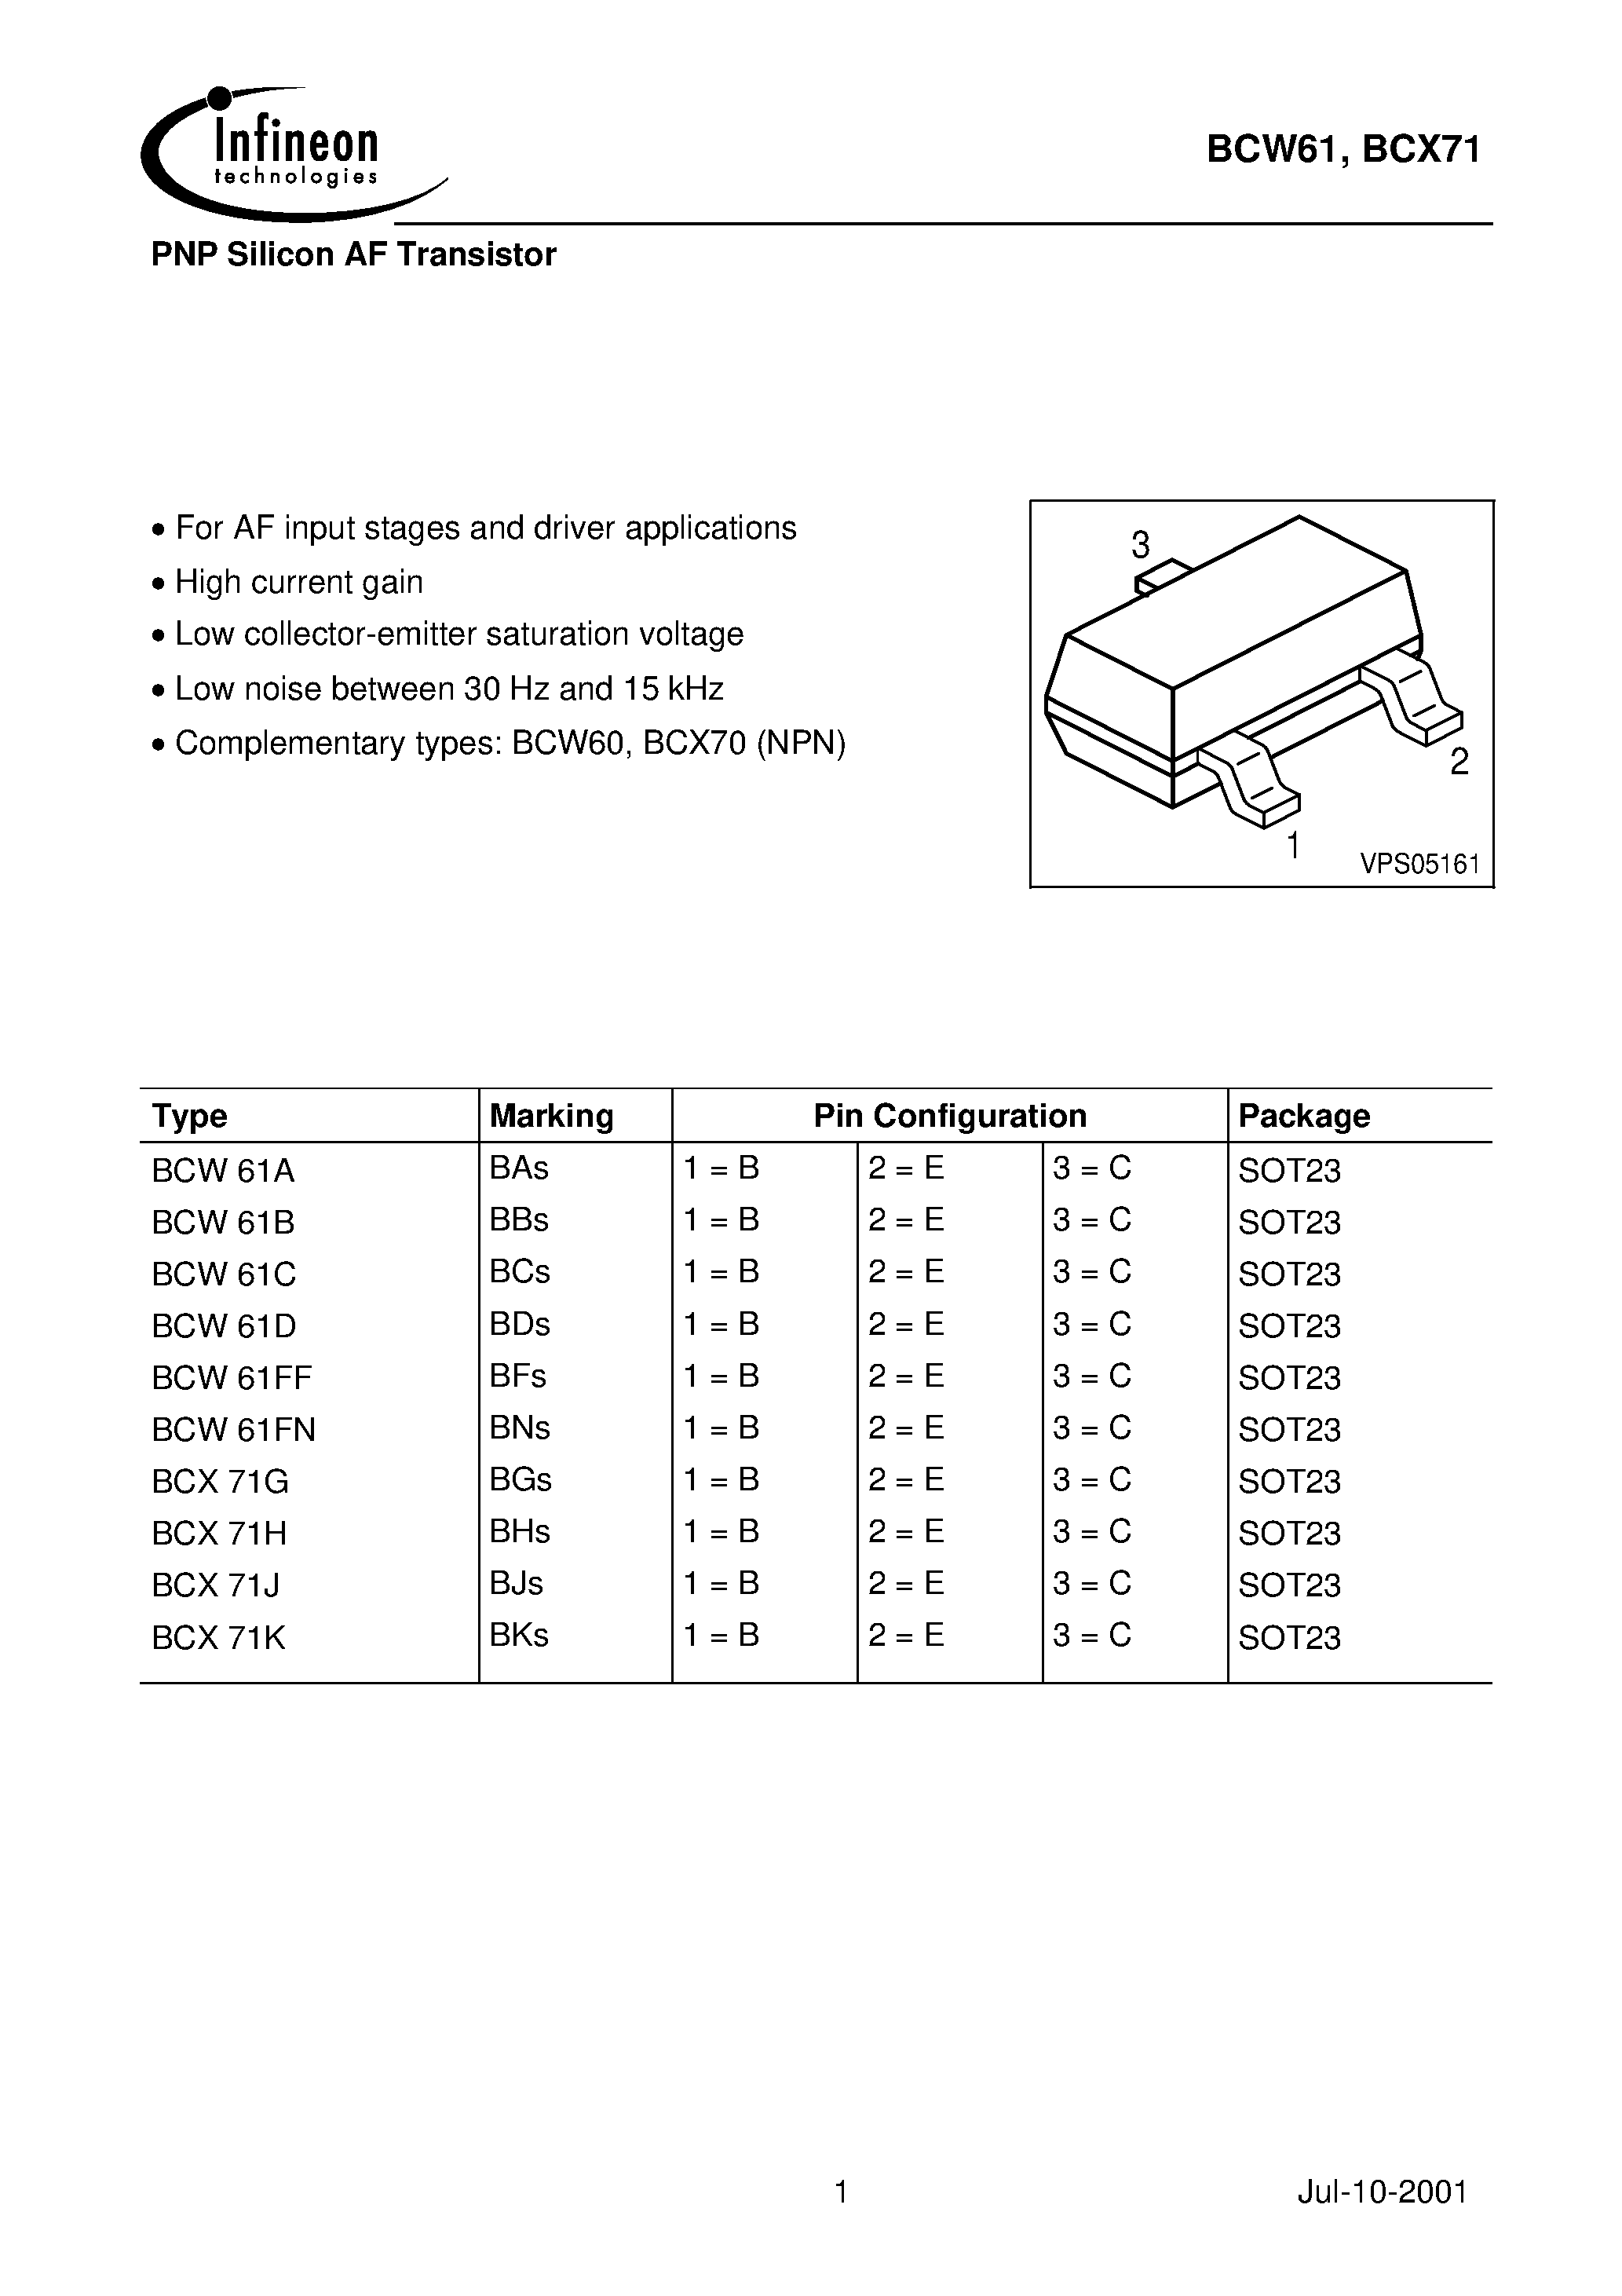 Даташит BCX71K - PNP Silicon AF Transistor страница 1